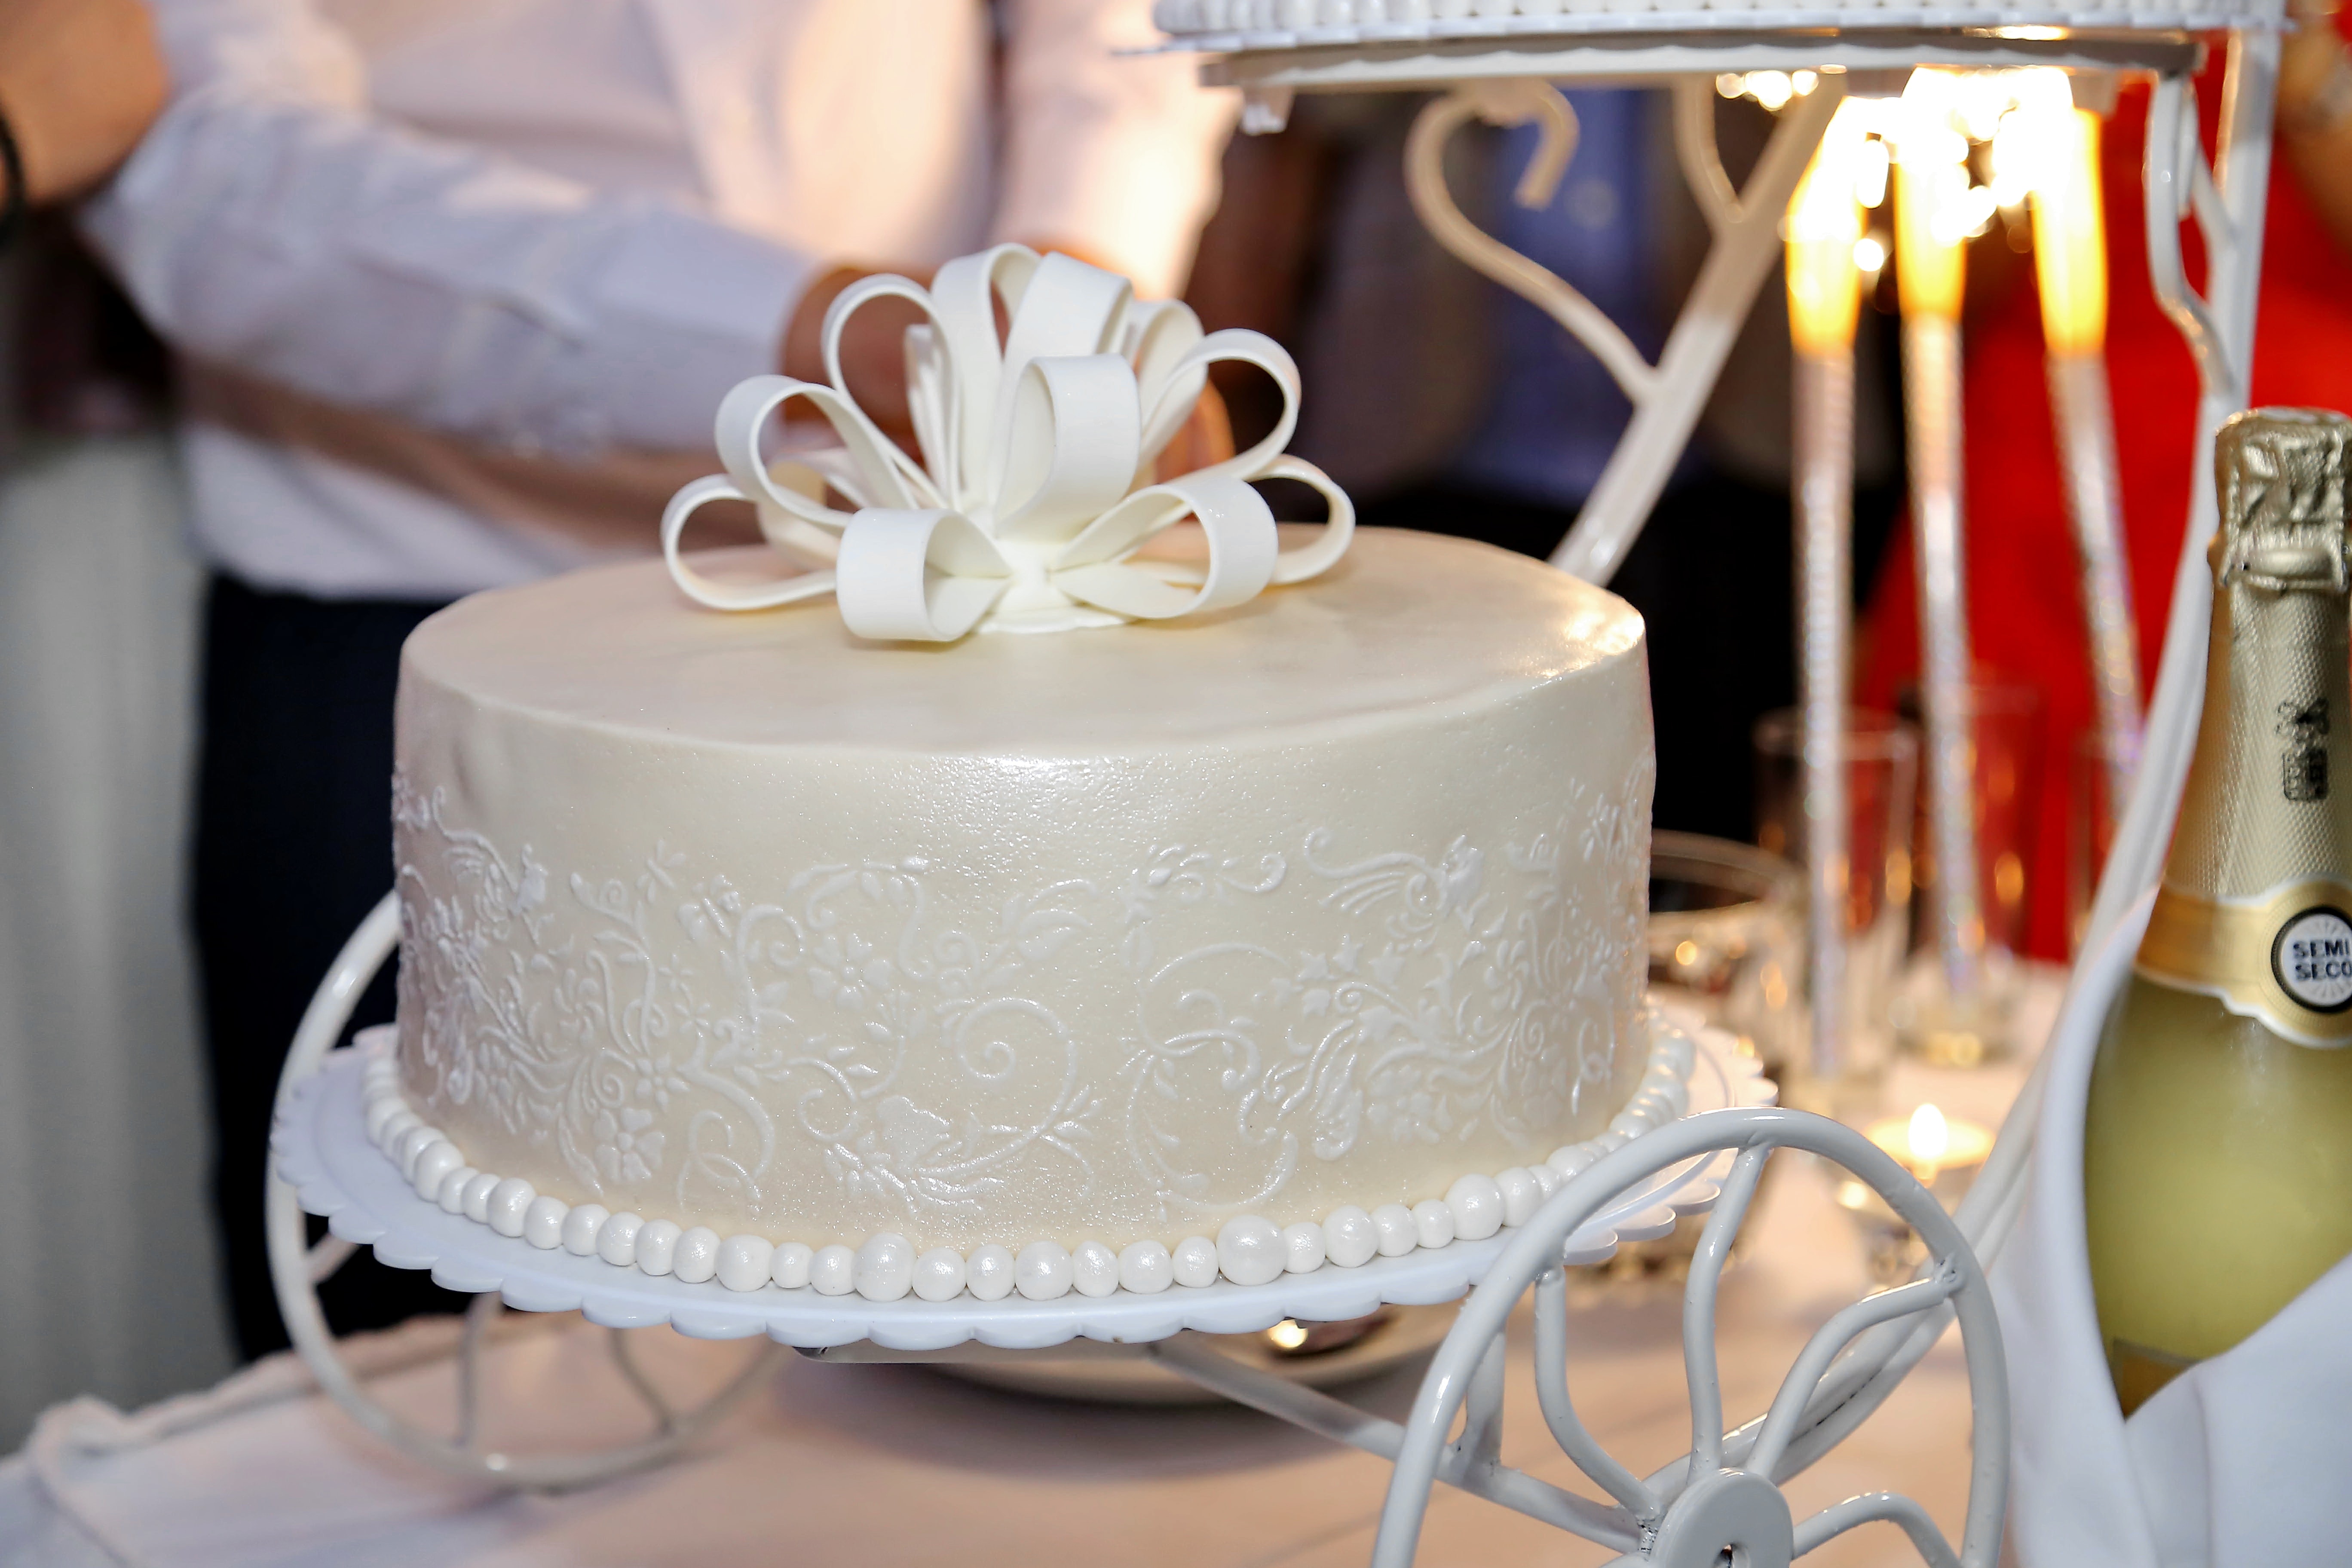 Foto gratis: compleanno, torta di compleanno, a lume di candela,  celebrazione, Champagne, dessert, candela, cibo, candele, torta